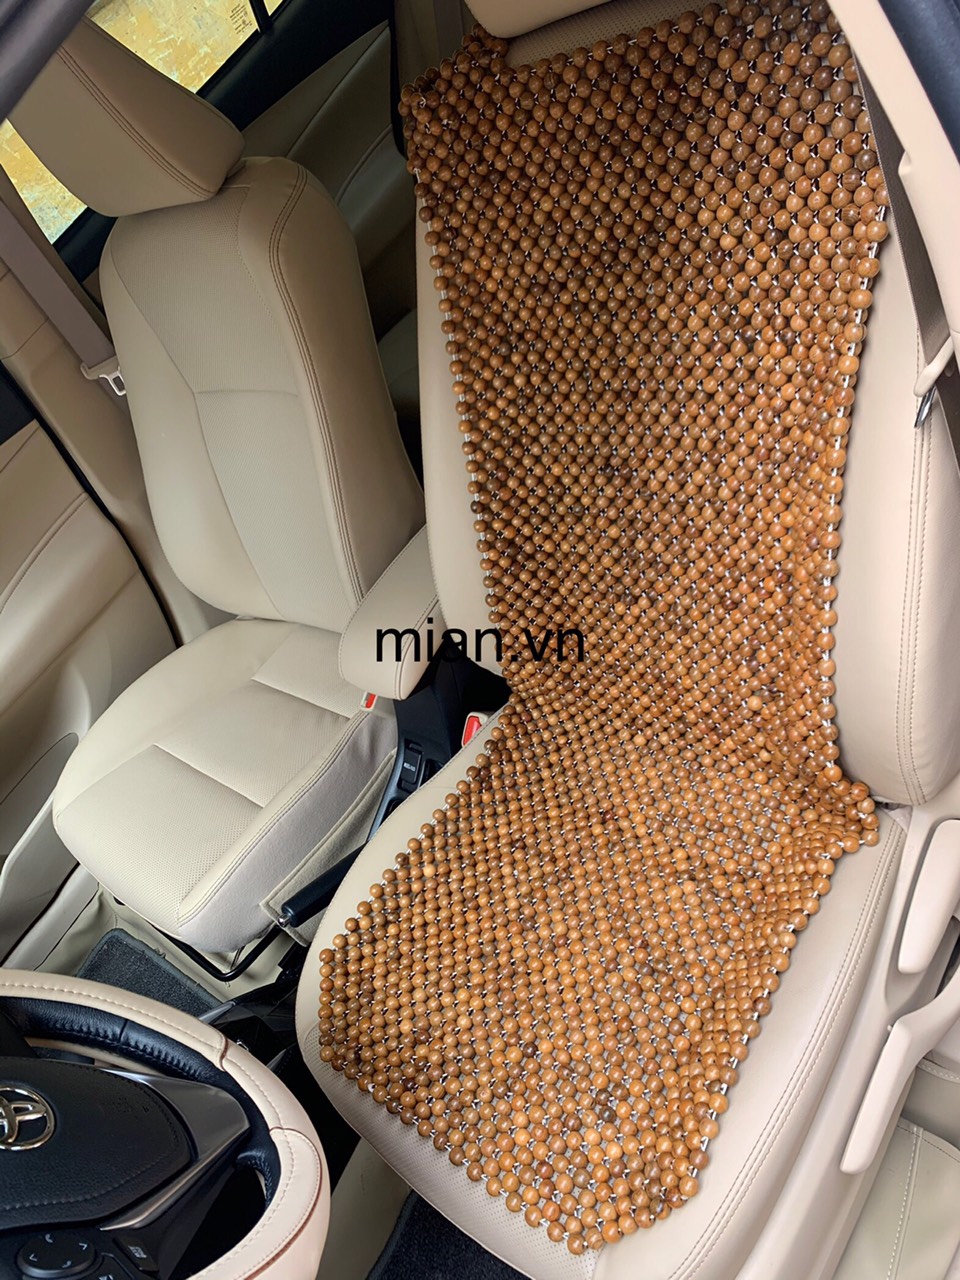 Lót ghế ô tô hạt gỗ Hương - Mian.vn ( hình thật )